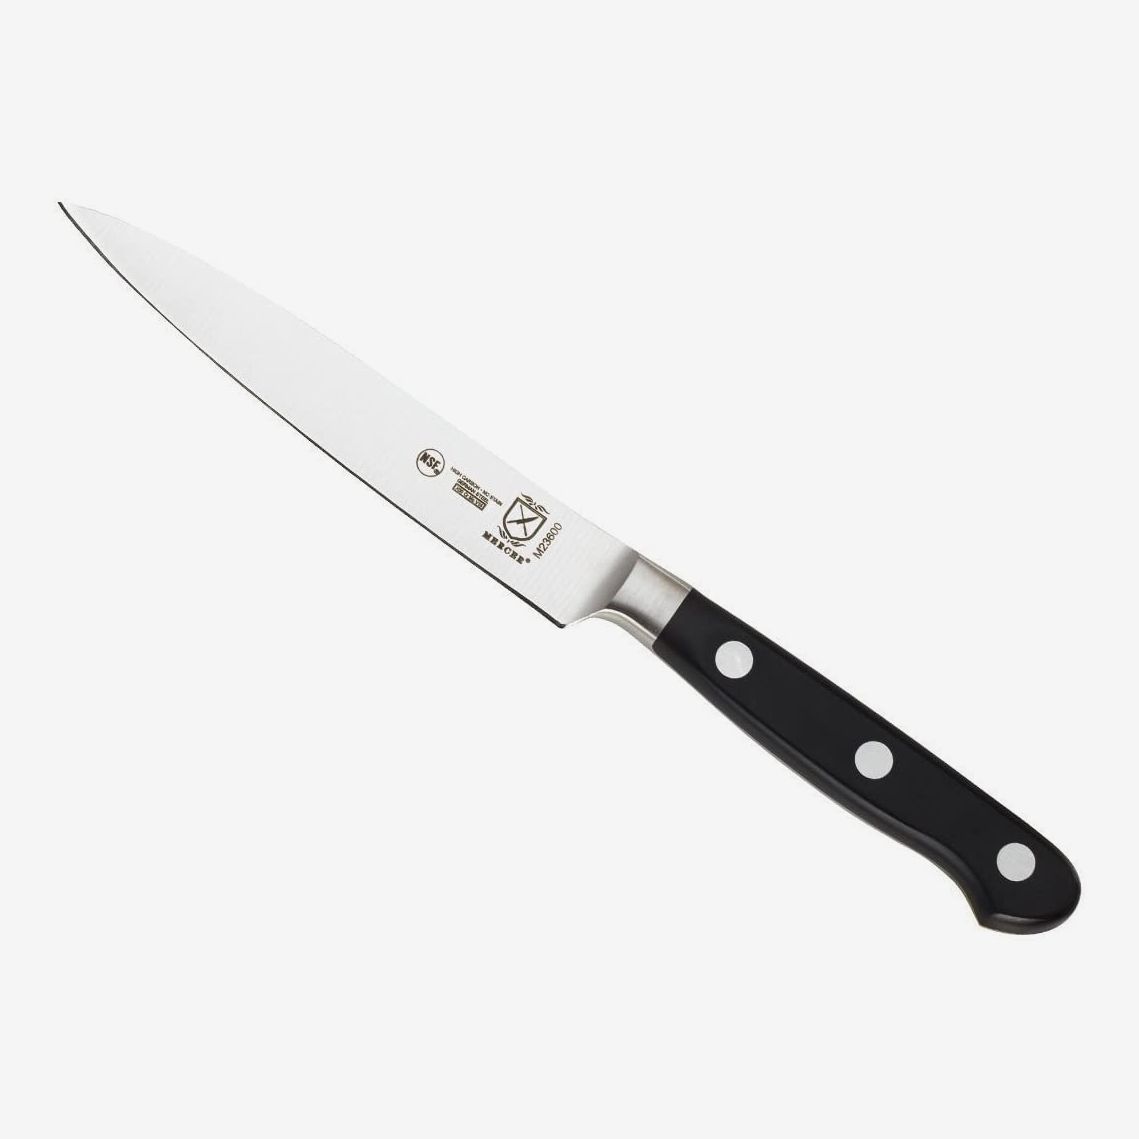 best all around kitchen knife